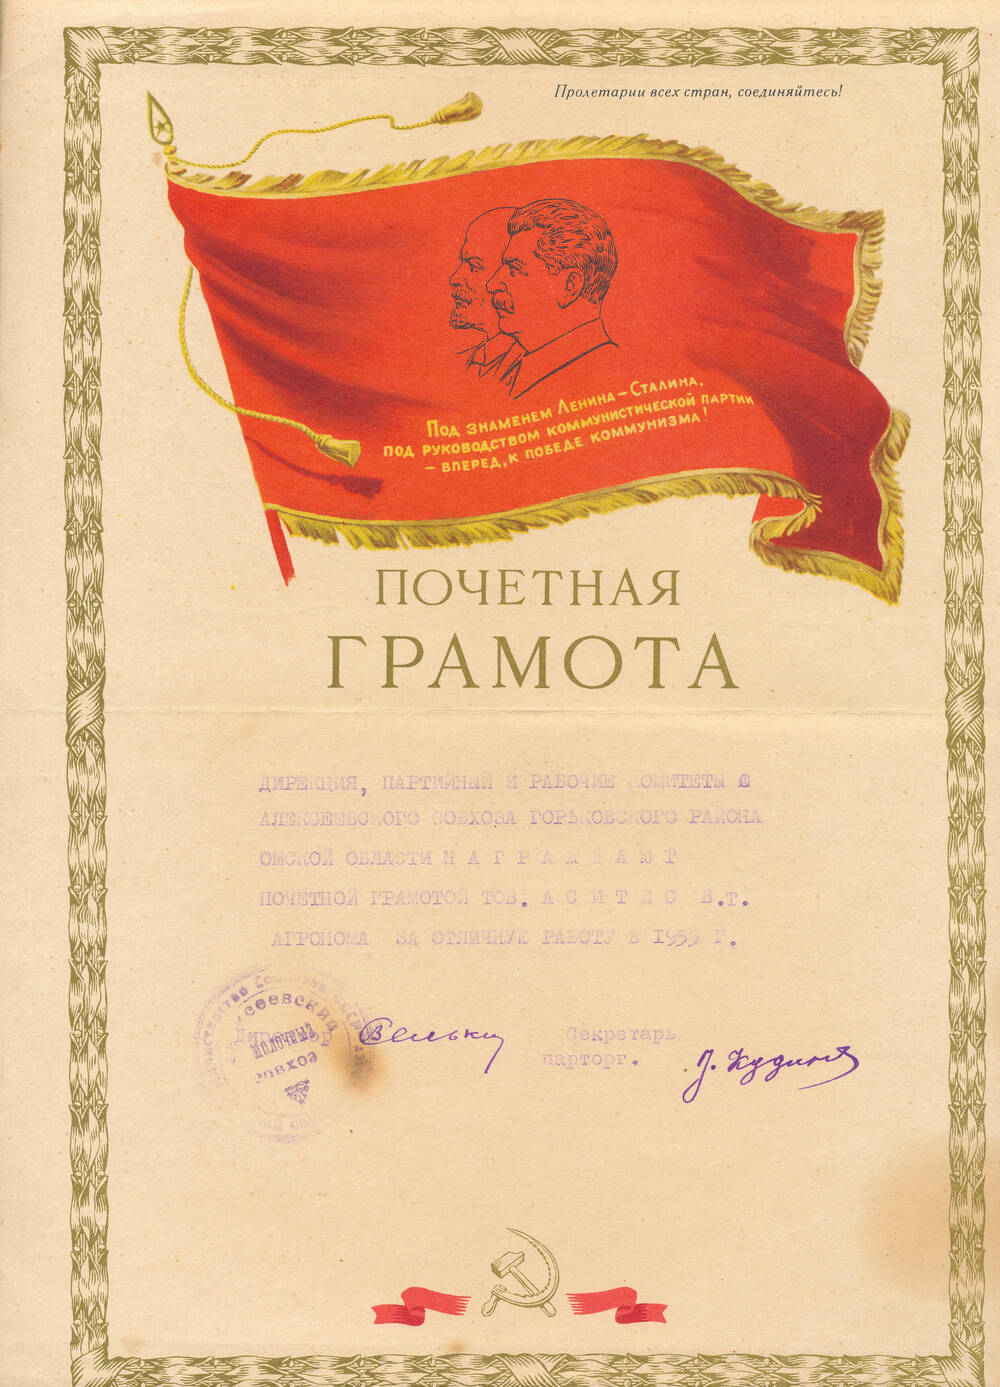 Почетная грамота Аситис Вернера Томовича-агронома за отличную работу в 1955 году